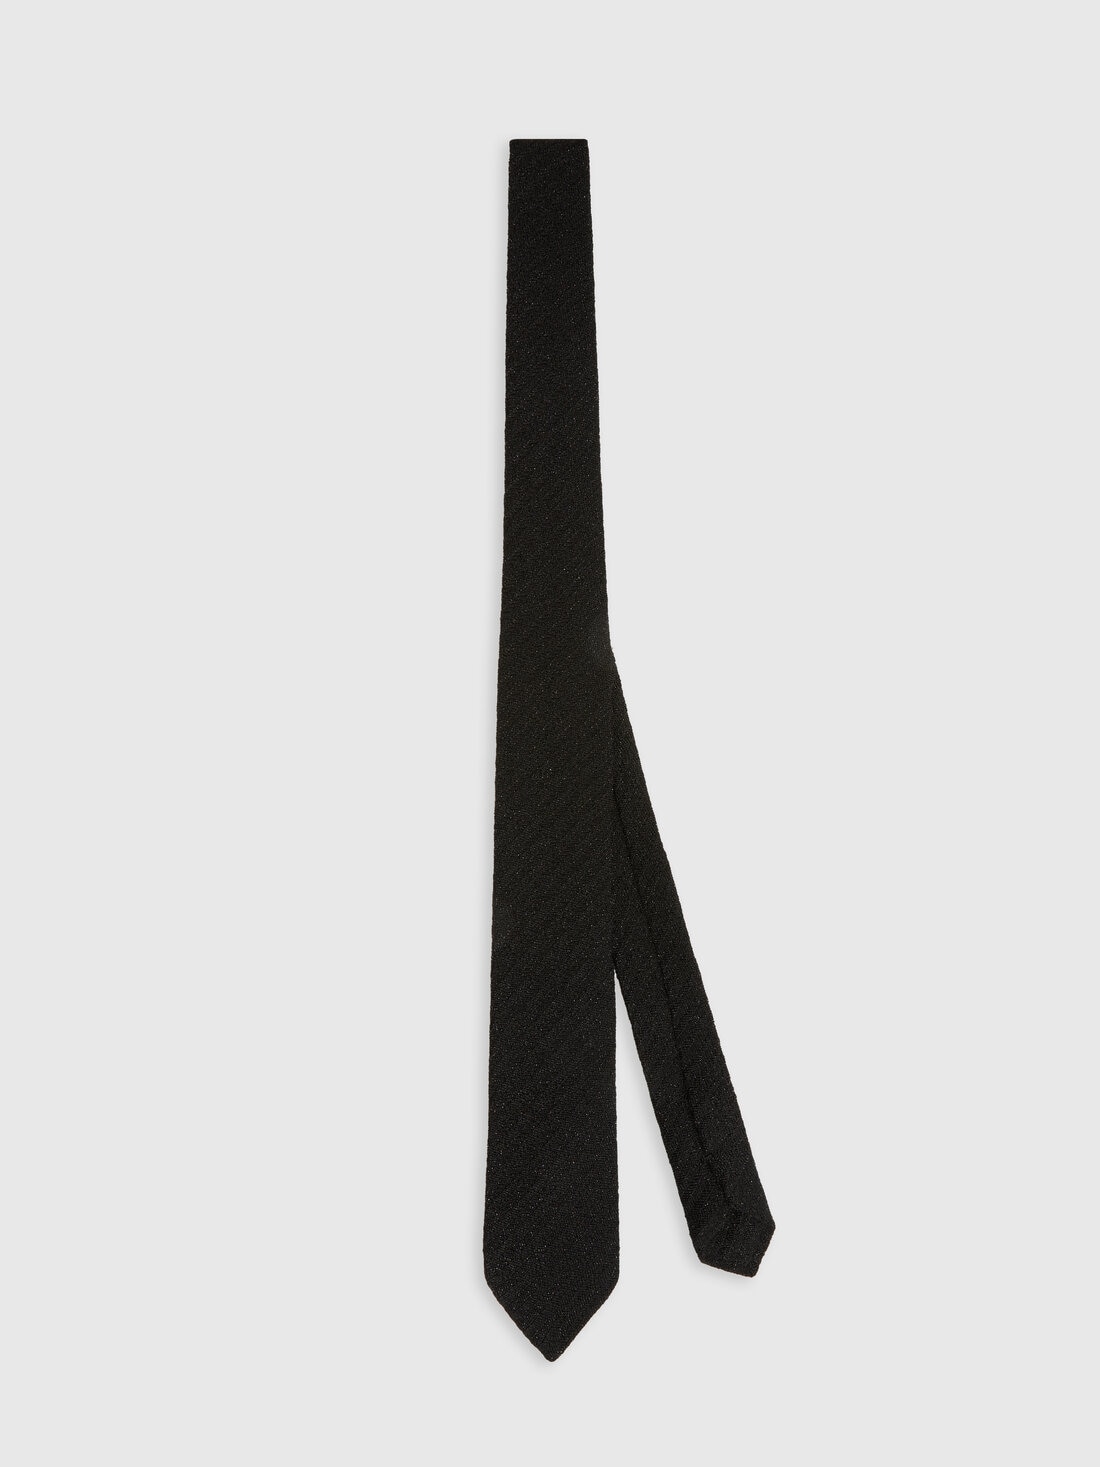 Krawatte aus Viskose-Lamé, Mehrfarbig  - 8053147141862 - 0